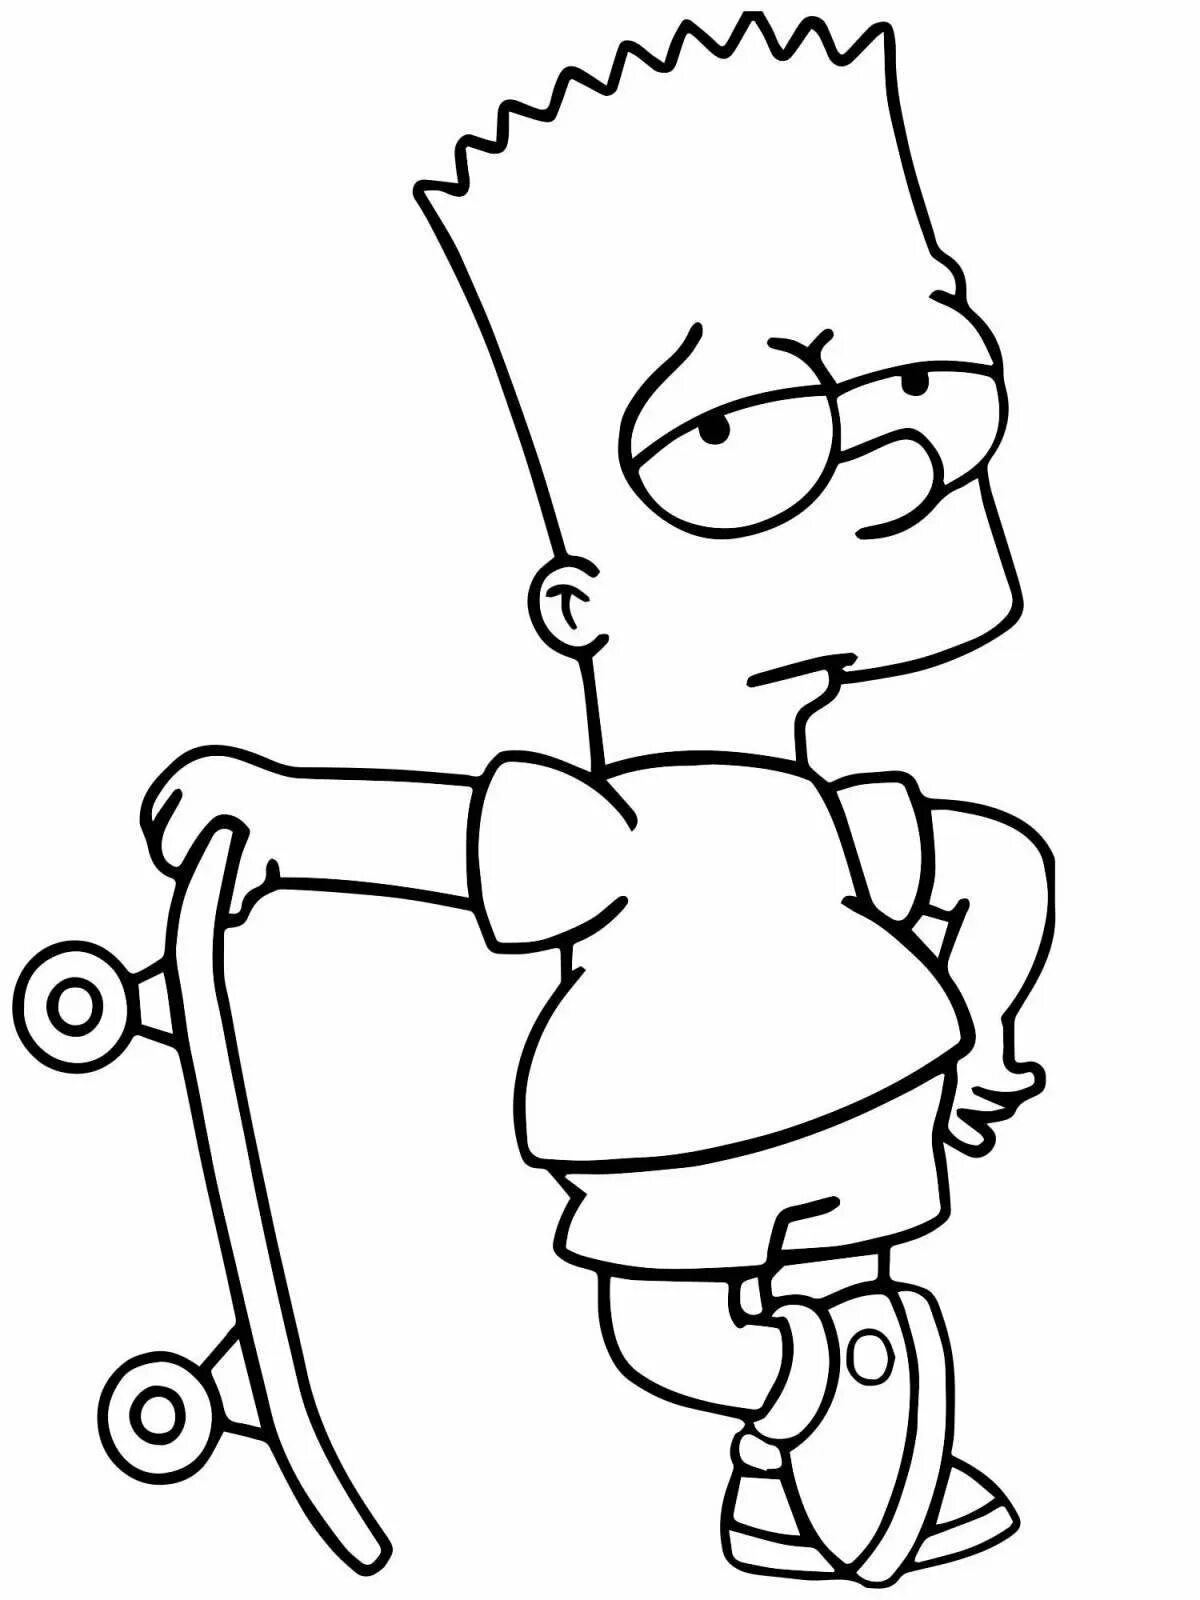 Легкие рисунки для срисовки карандашом мальчикам. Раскраски симсон барт симпсон. Барт симпсон карандашом. Барт симпсон для срисовки. Разукрашка симпсоны барт.